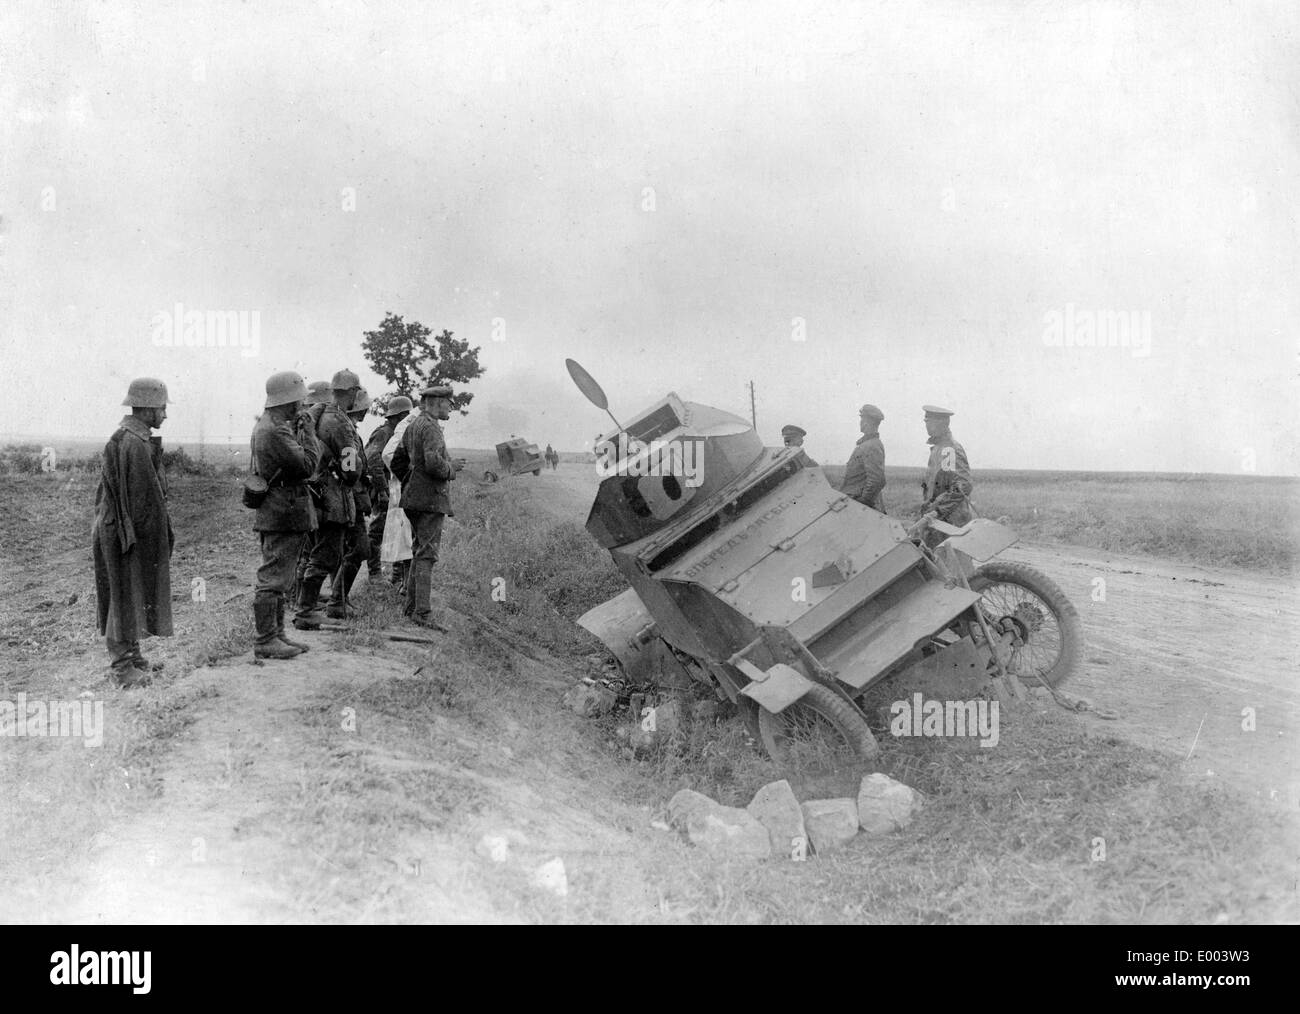 Les blindés russes fait naufrage dans l'Est de la Galicie, 1917 Banque D'Images